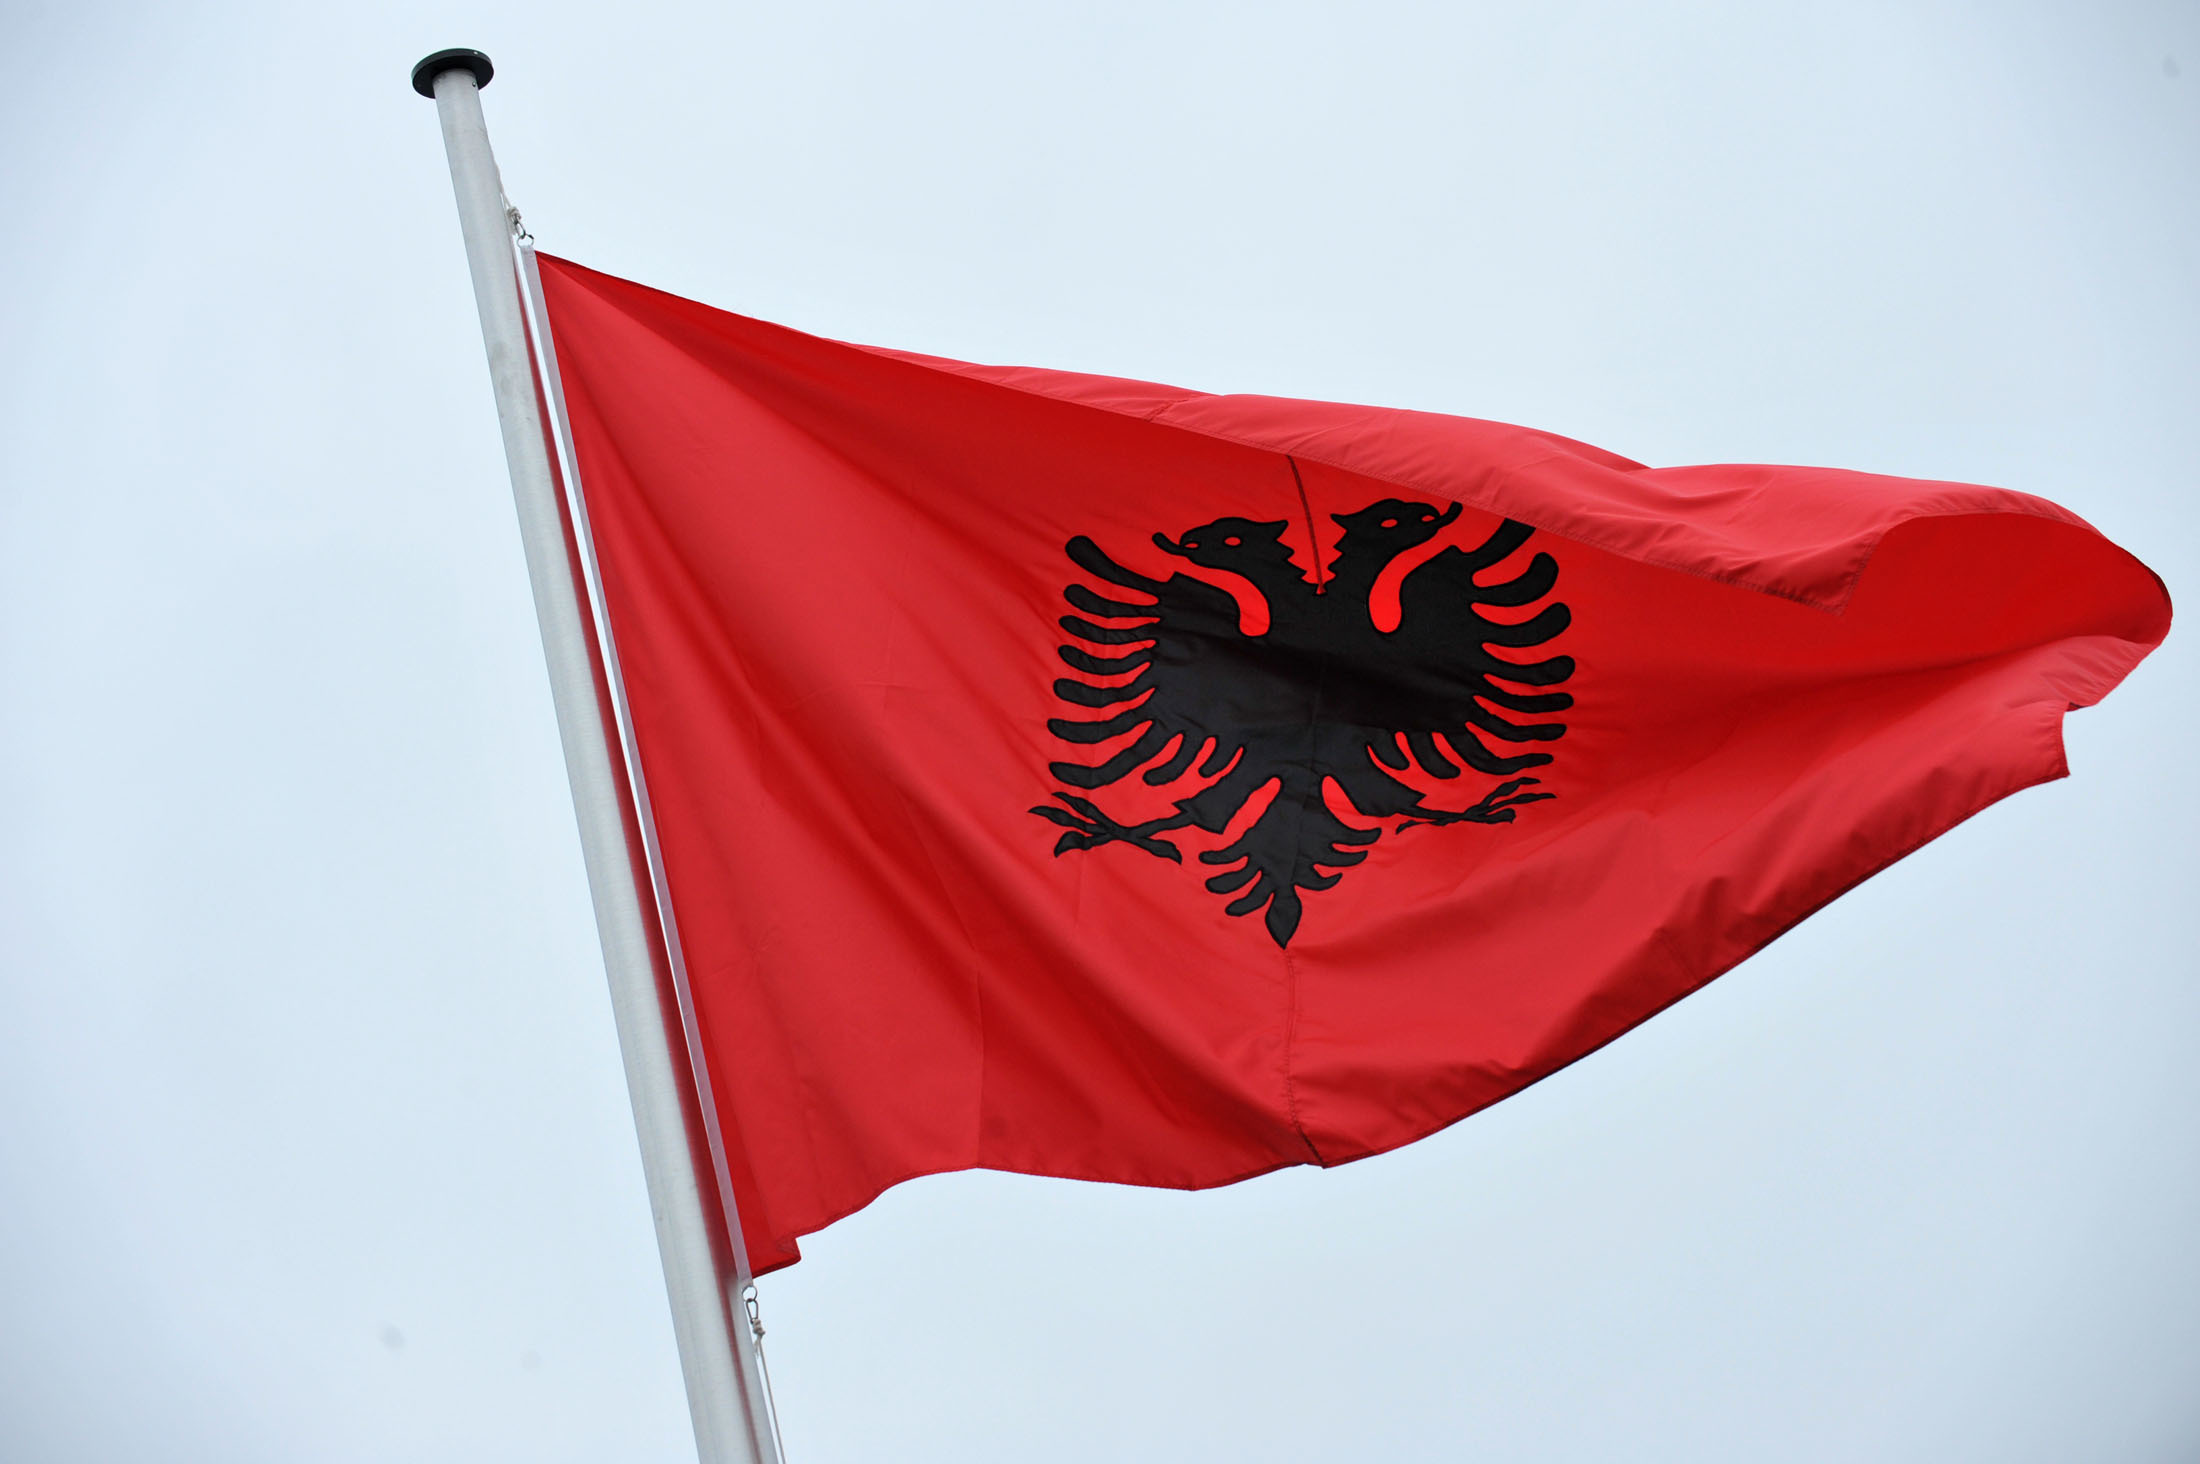 “Ιστορική” χαρακτήρισε τη συμφωνία με την Europol ο Αλβανός υπουργός Εσωτερικών